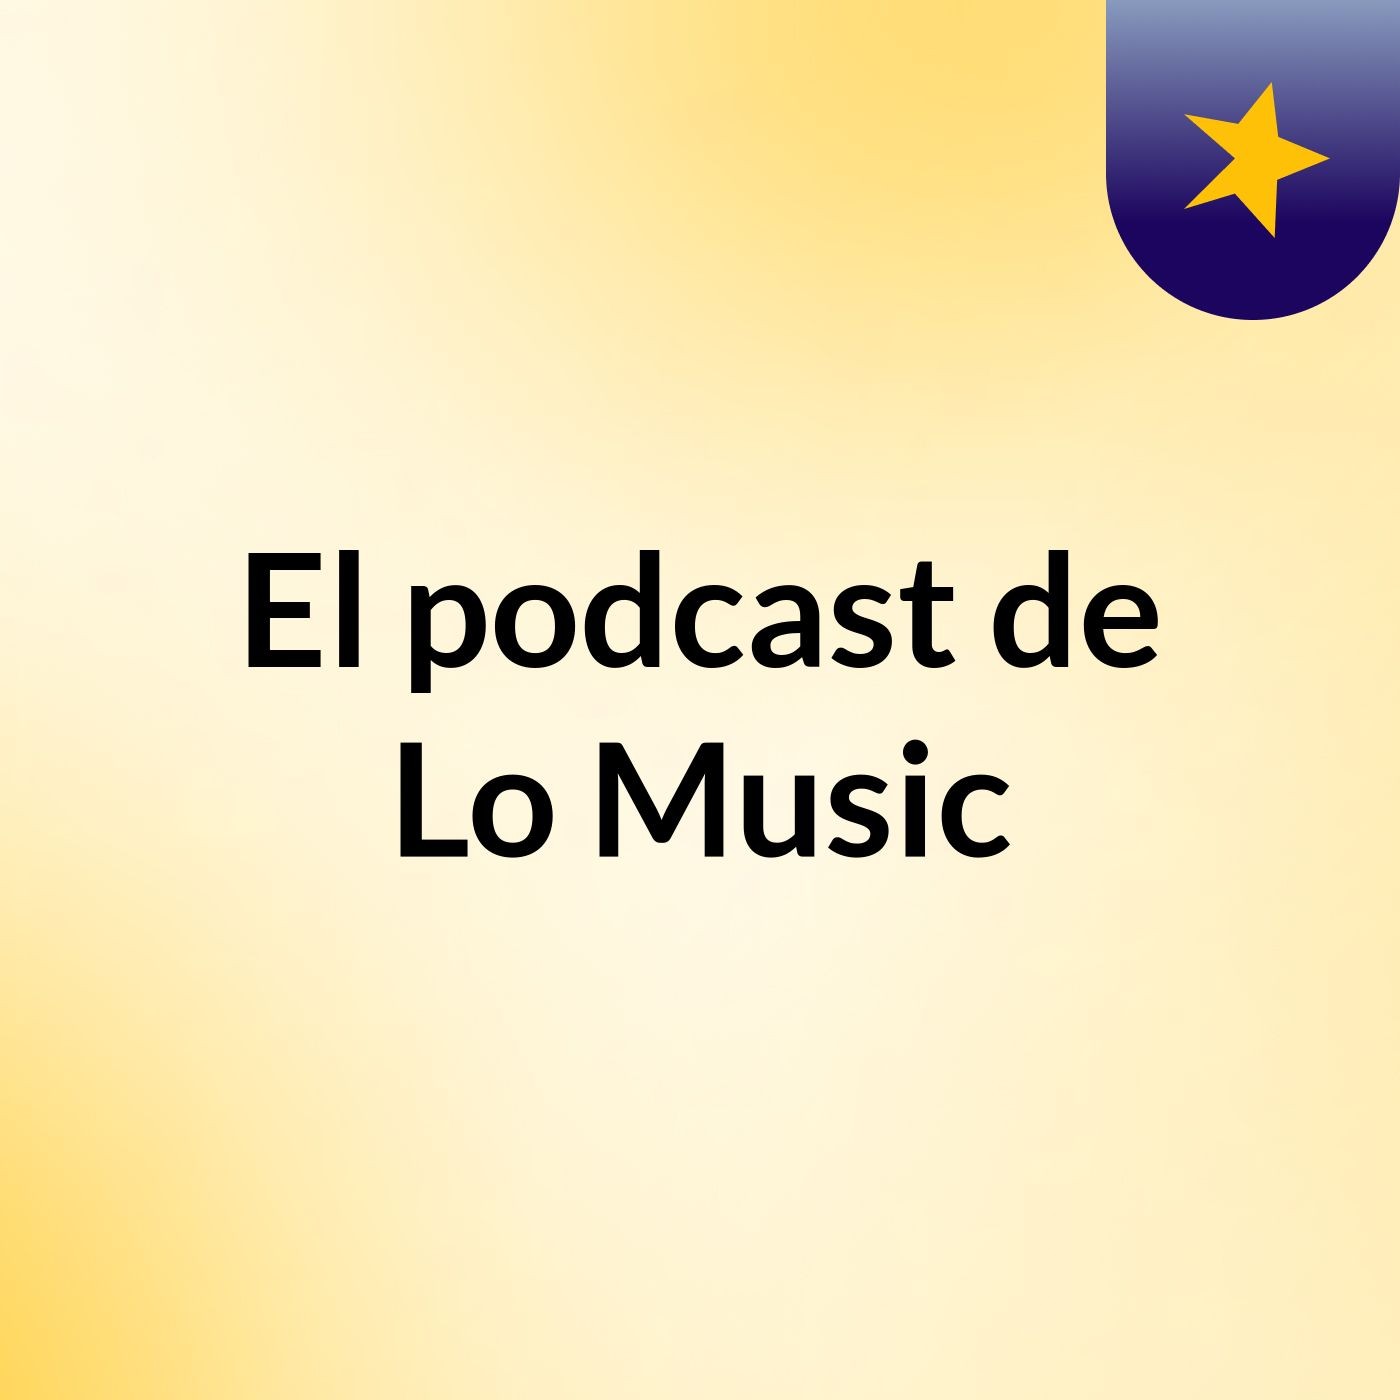 Episodio 5 - El podcast de Lo Music